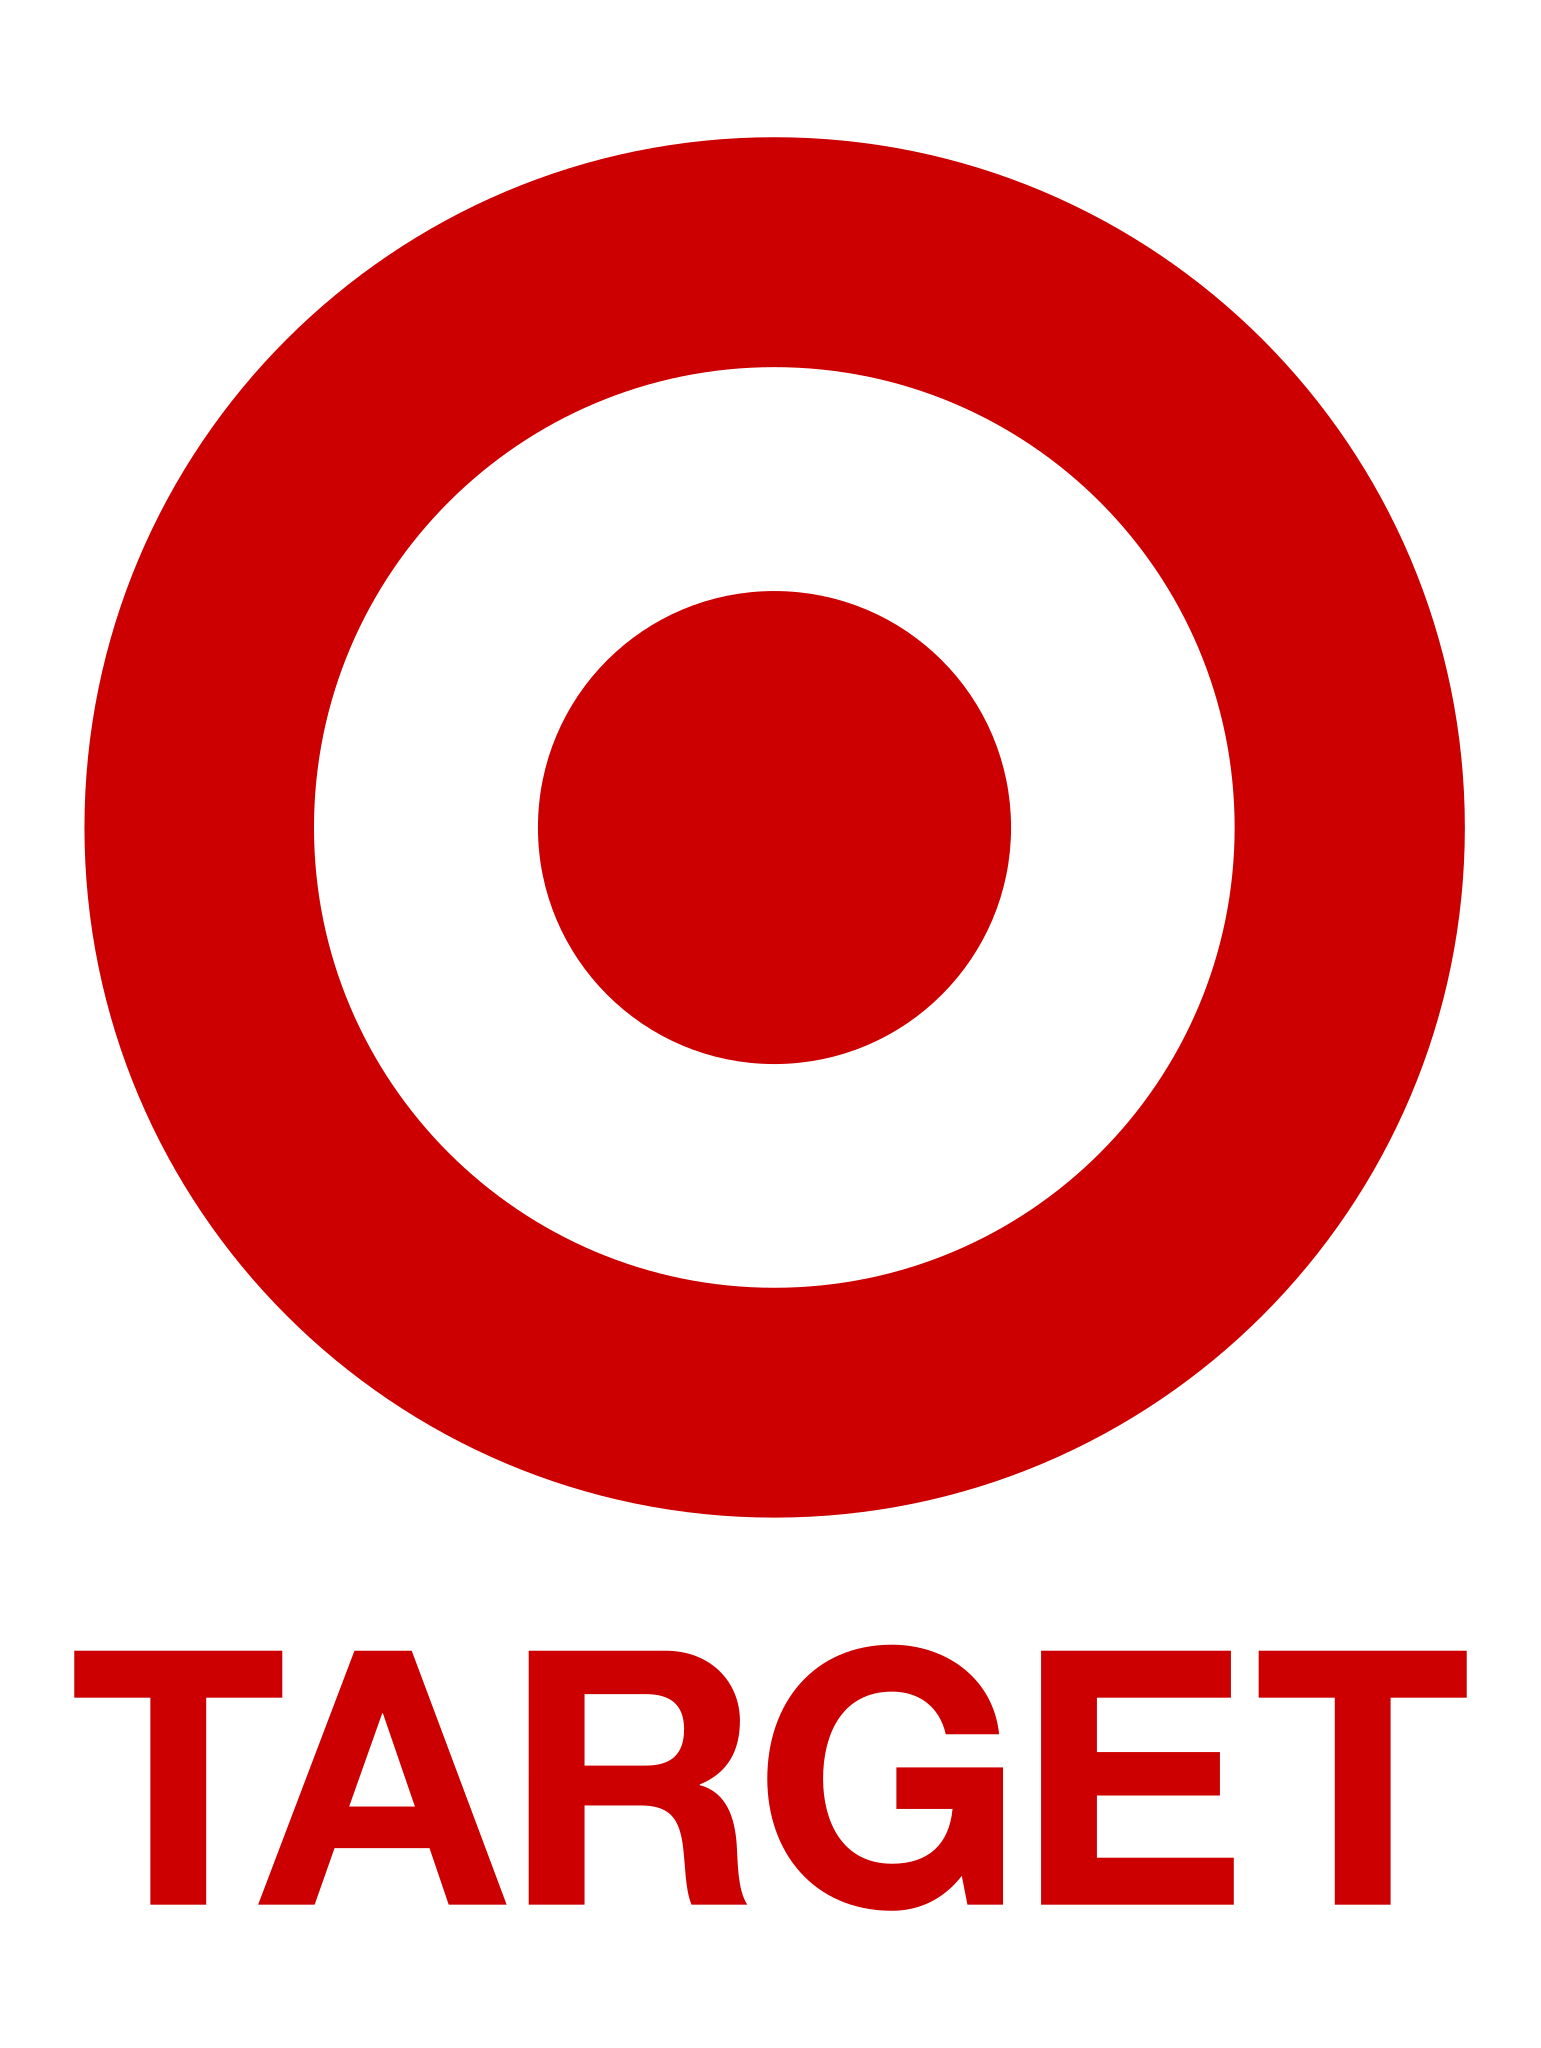 The Target logo